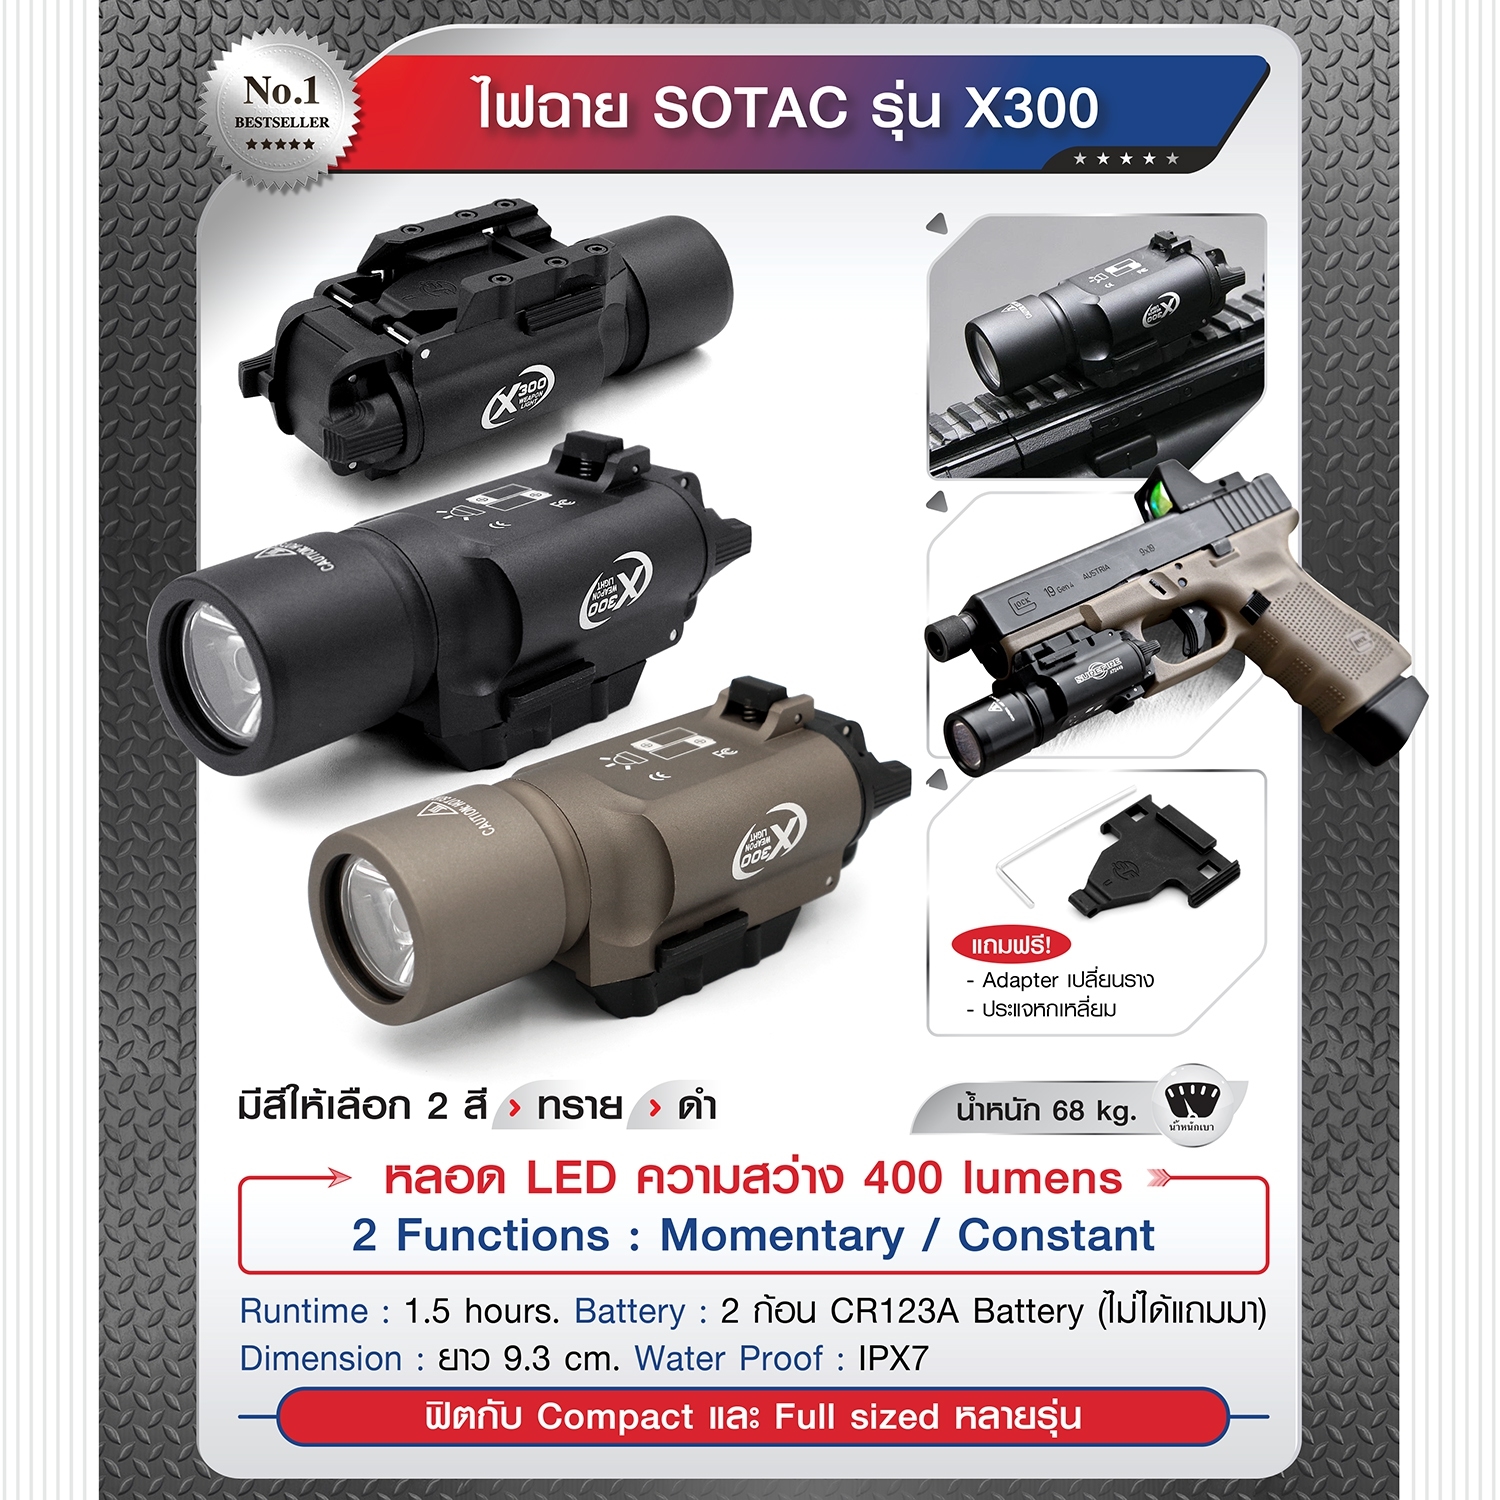 ไฟฉาย SOTAC รุ่น X300 มีสีดำ/ทราย ตัวเรือนผลิตจากอลูมิเนียมเกรดคุณภาพ หลอด LED  ความสว่าง 400 lumens BY Tactical unit